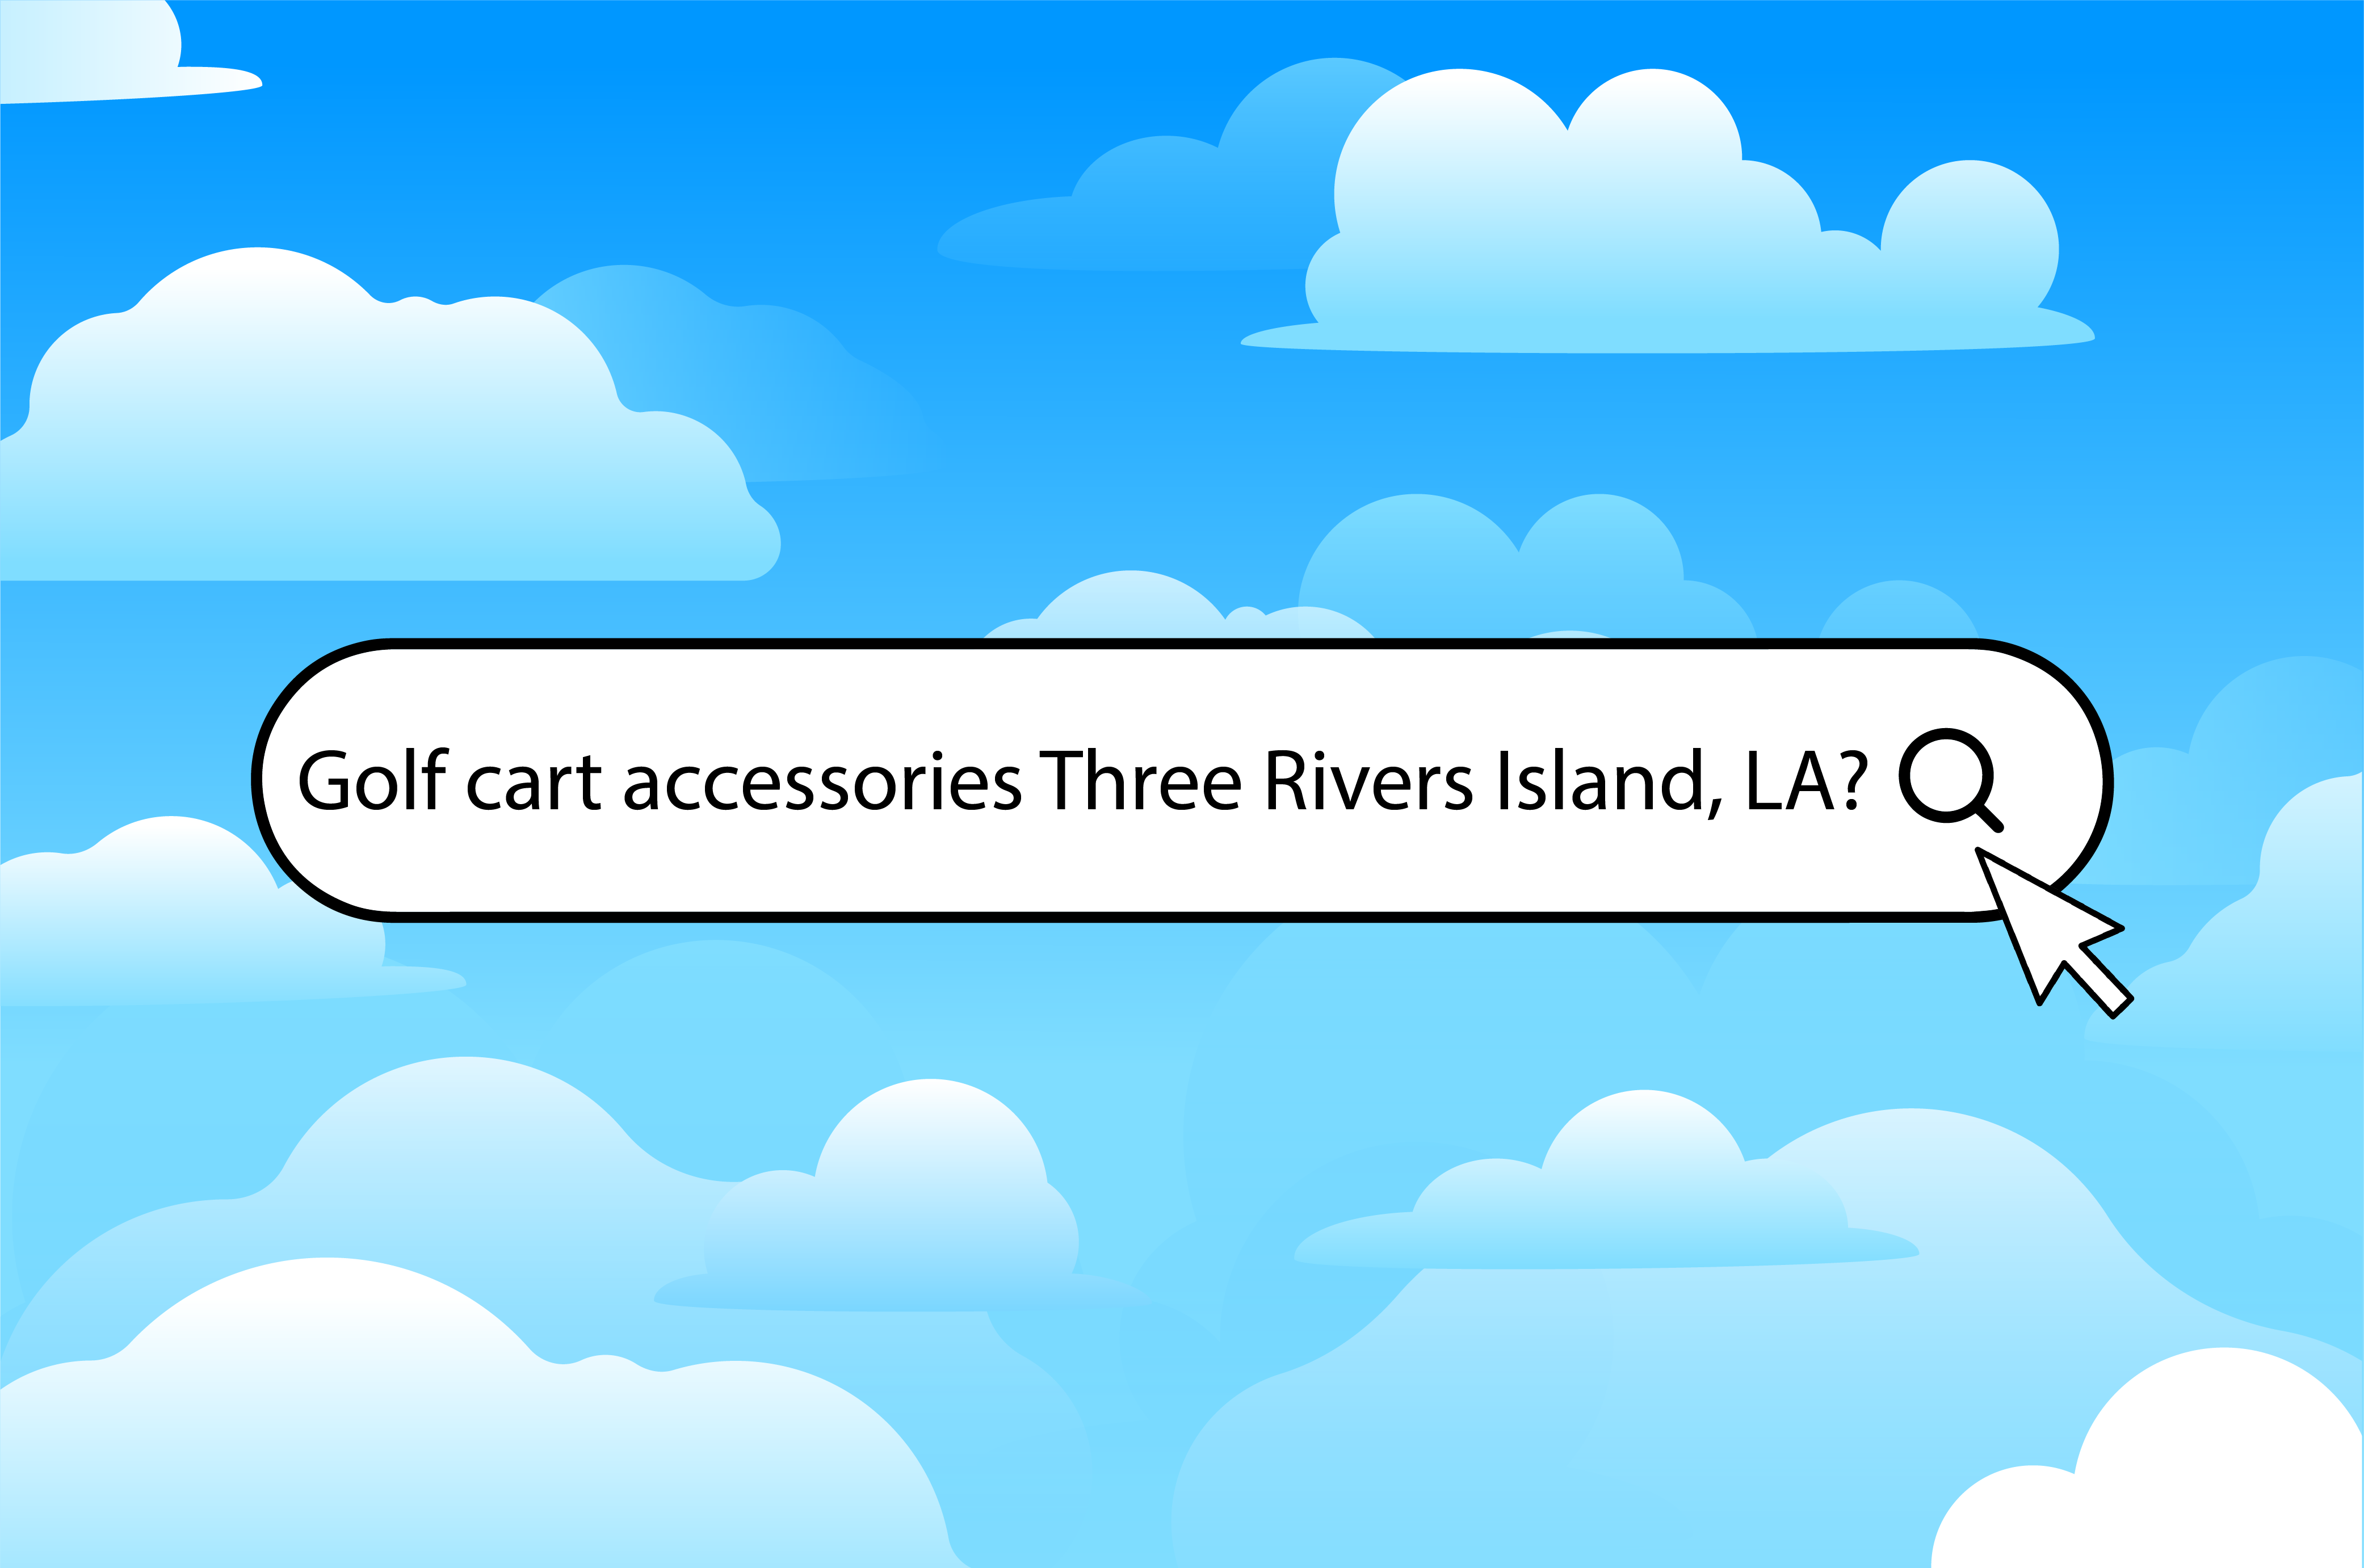 Three ways to find golf cart accessories in Three Rivers Island, LA